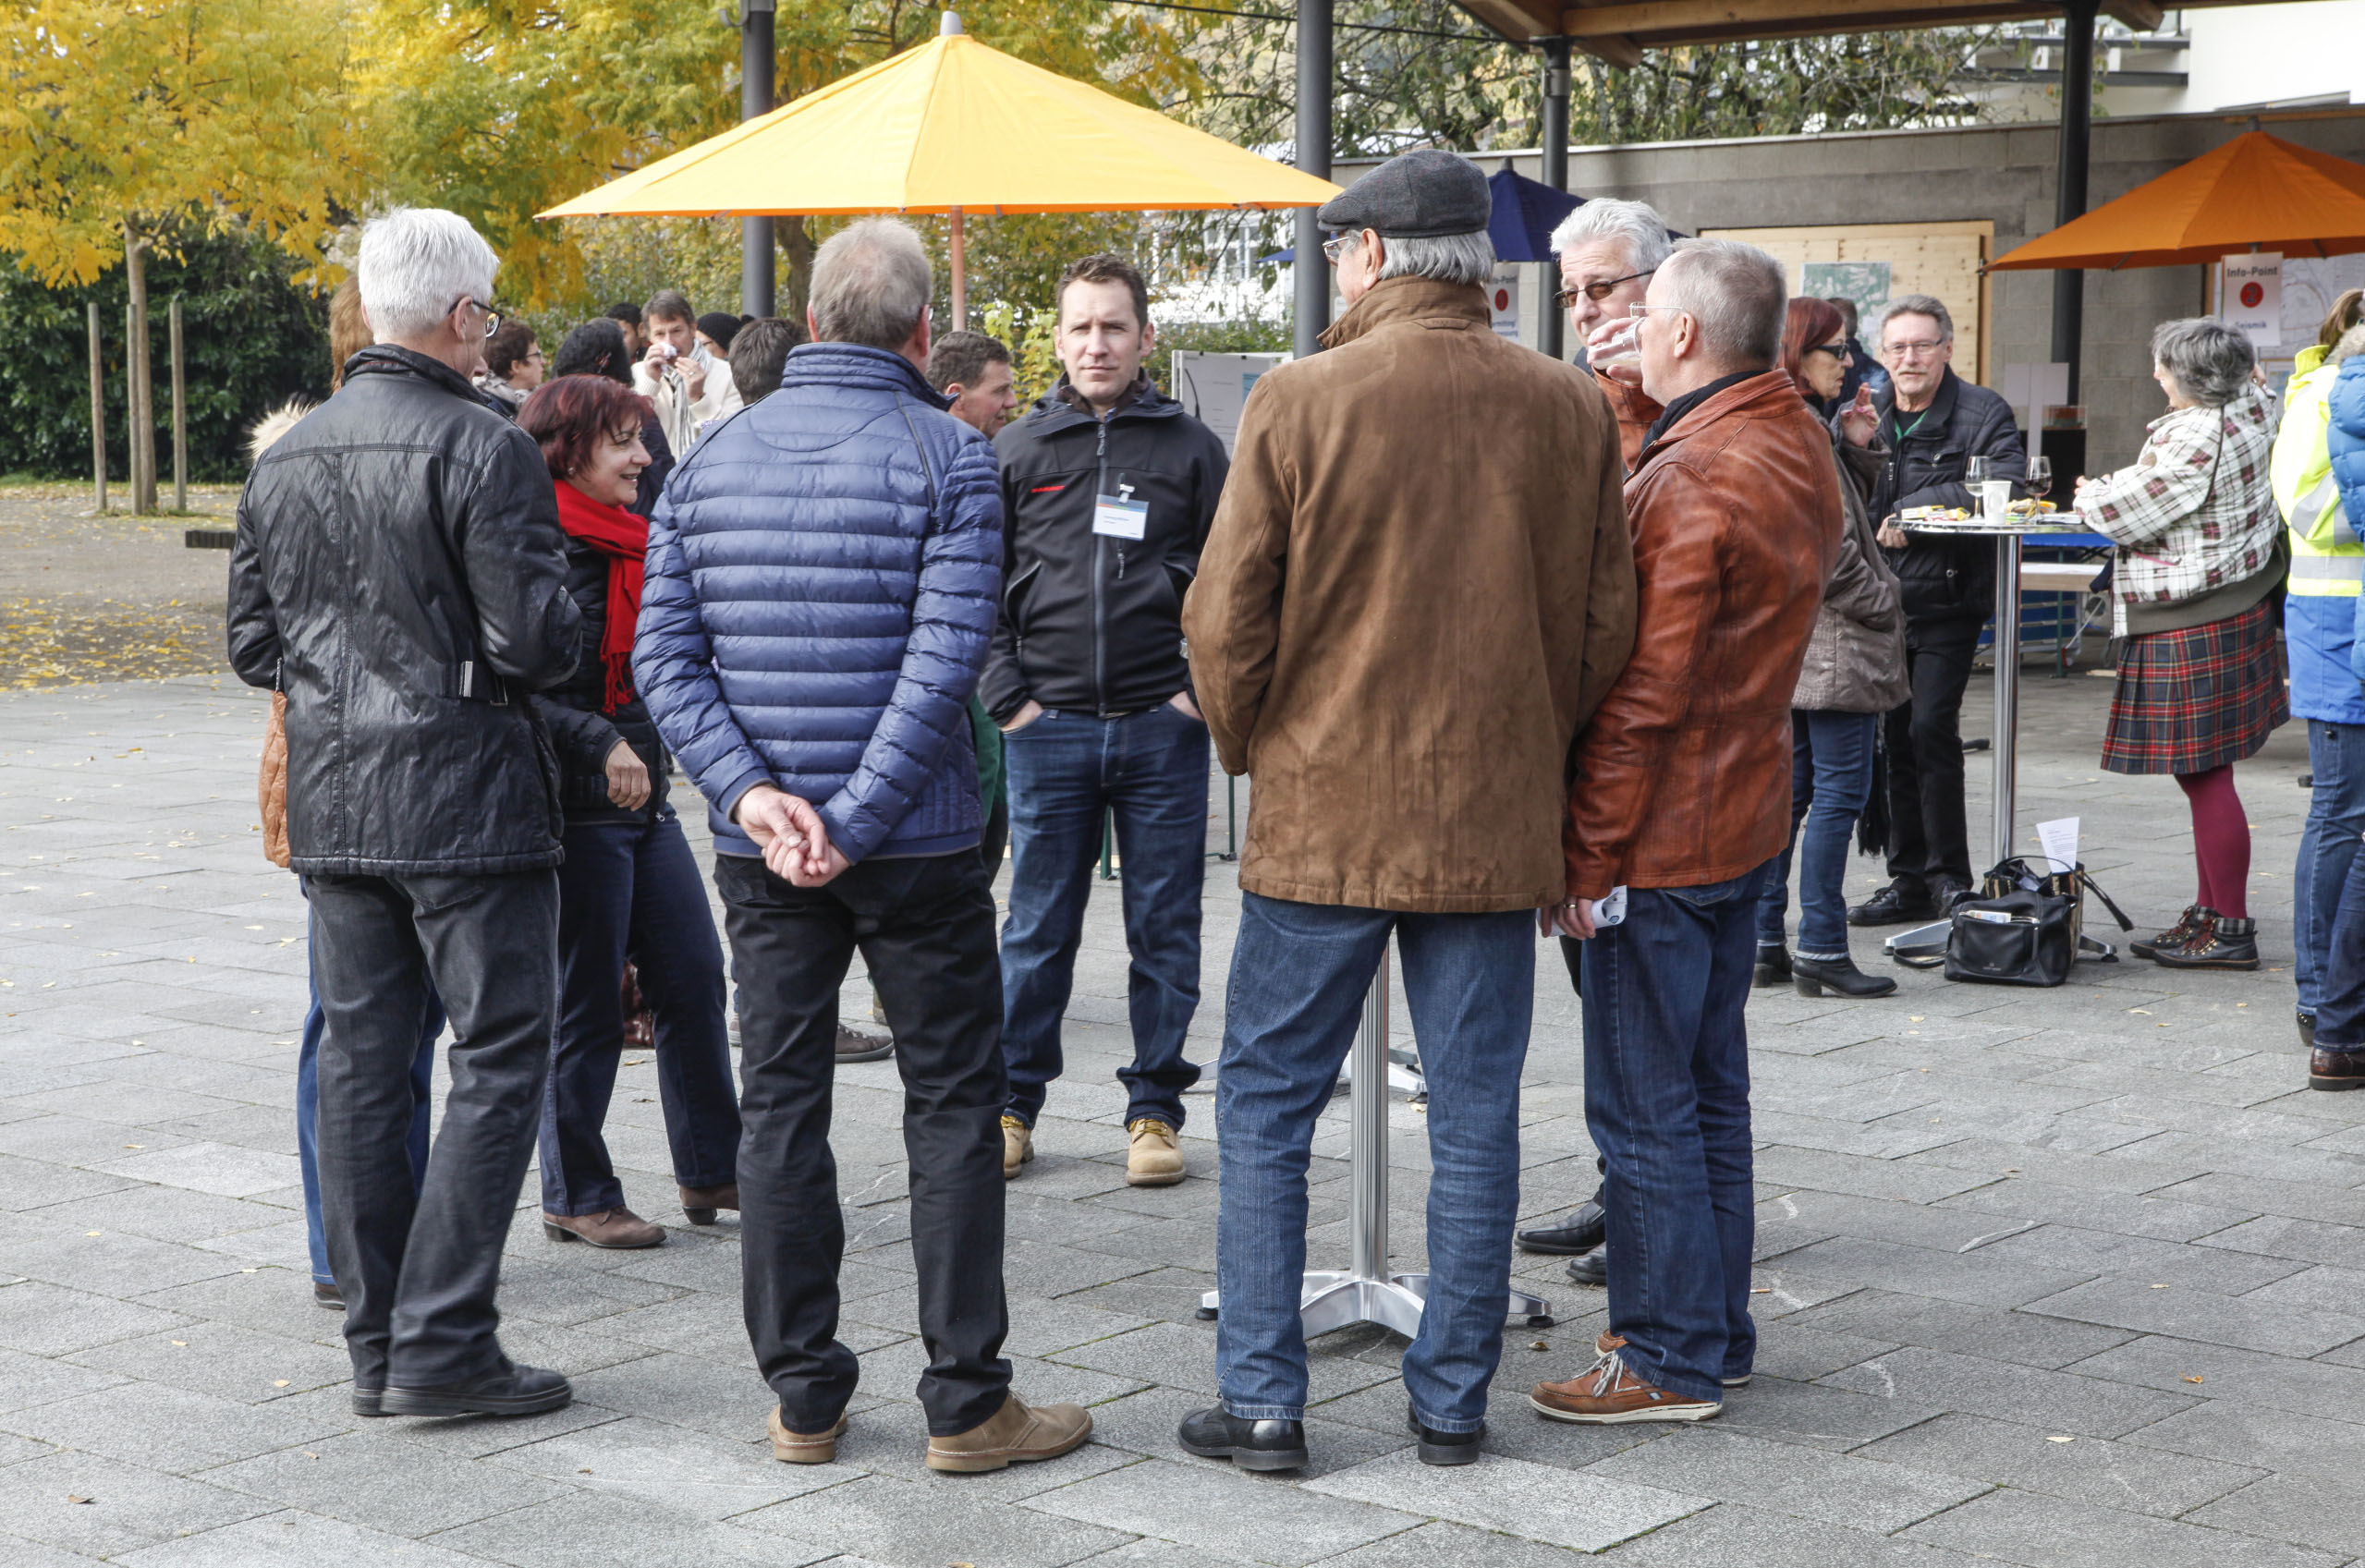 Einige Männer stehen auf einem öffentlichen Platz im Kreis und unterhalten sich